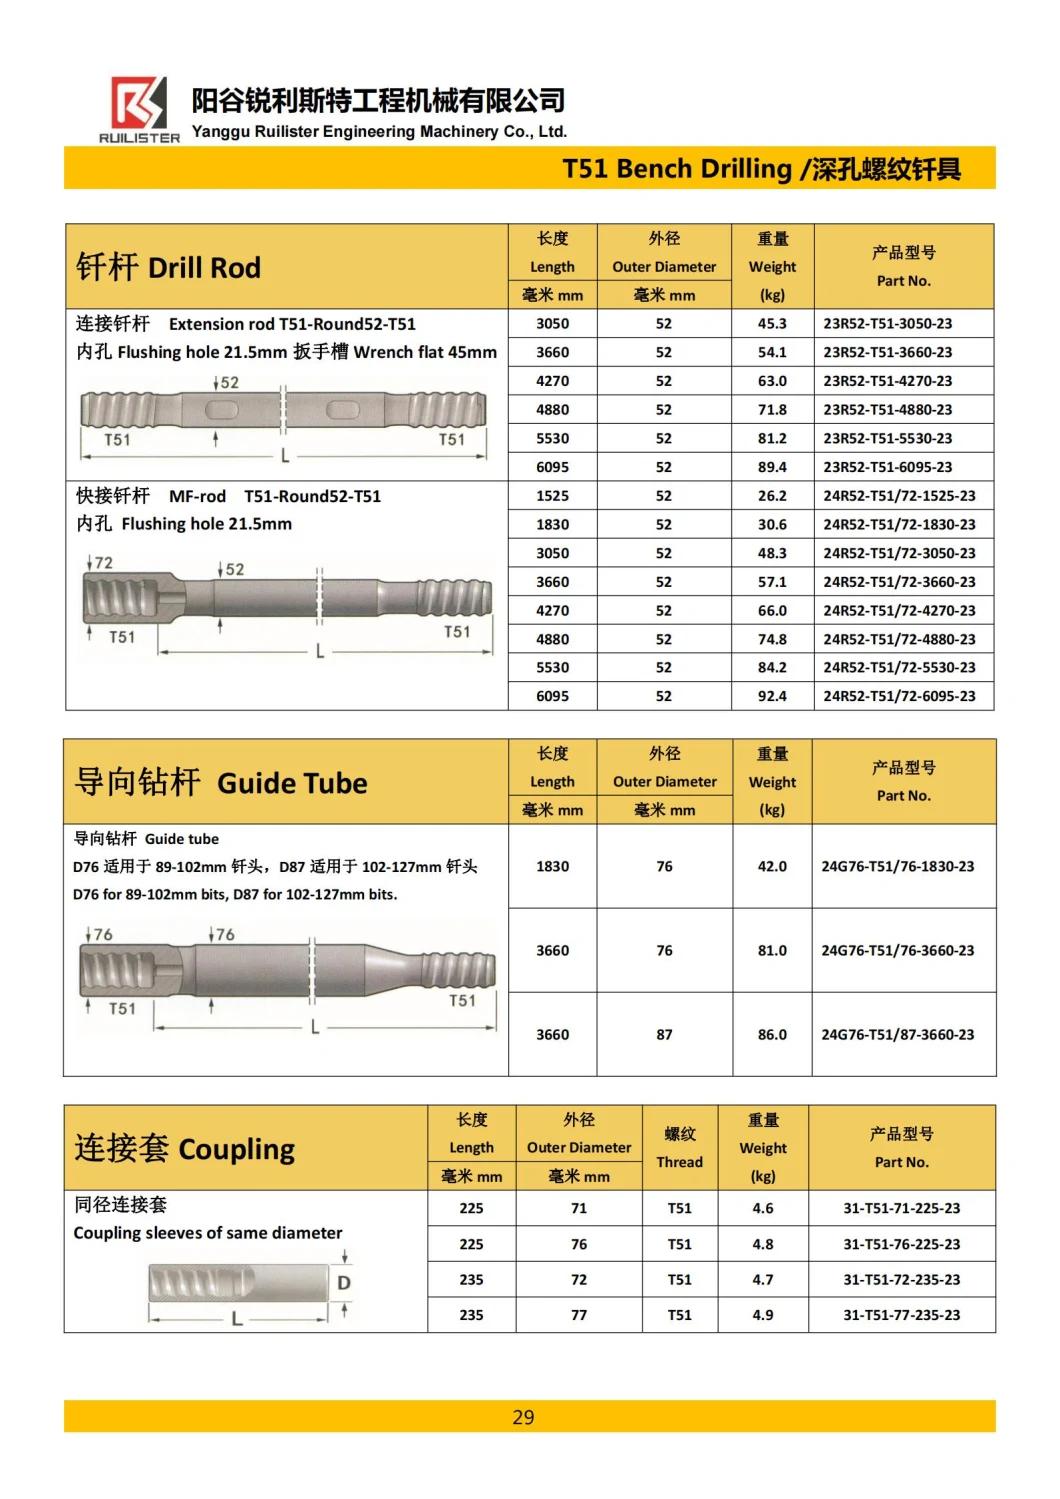 Top Hammer Rock Drilling Tools Mf Drill Rod T38 T45 T51